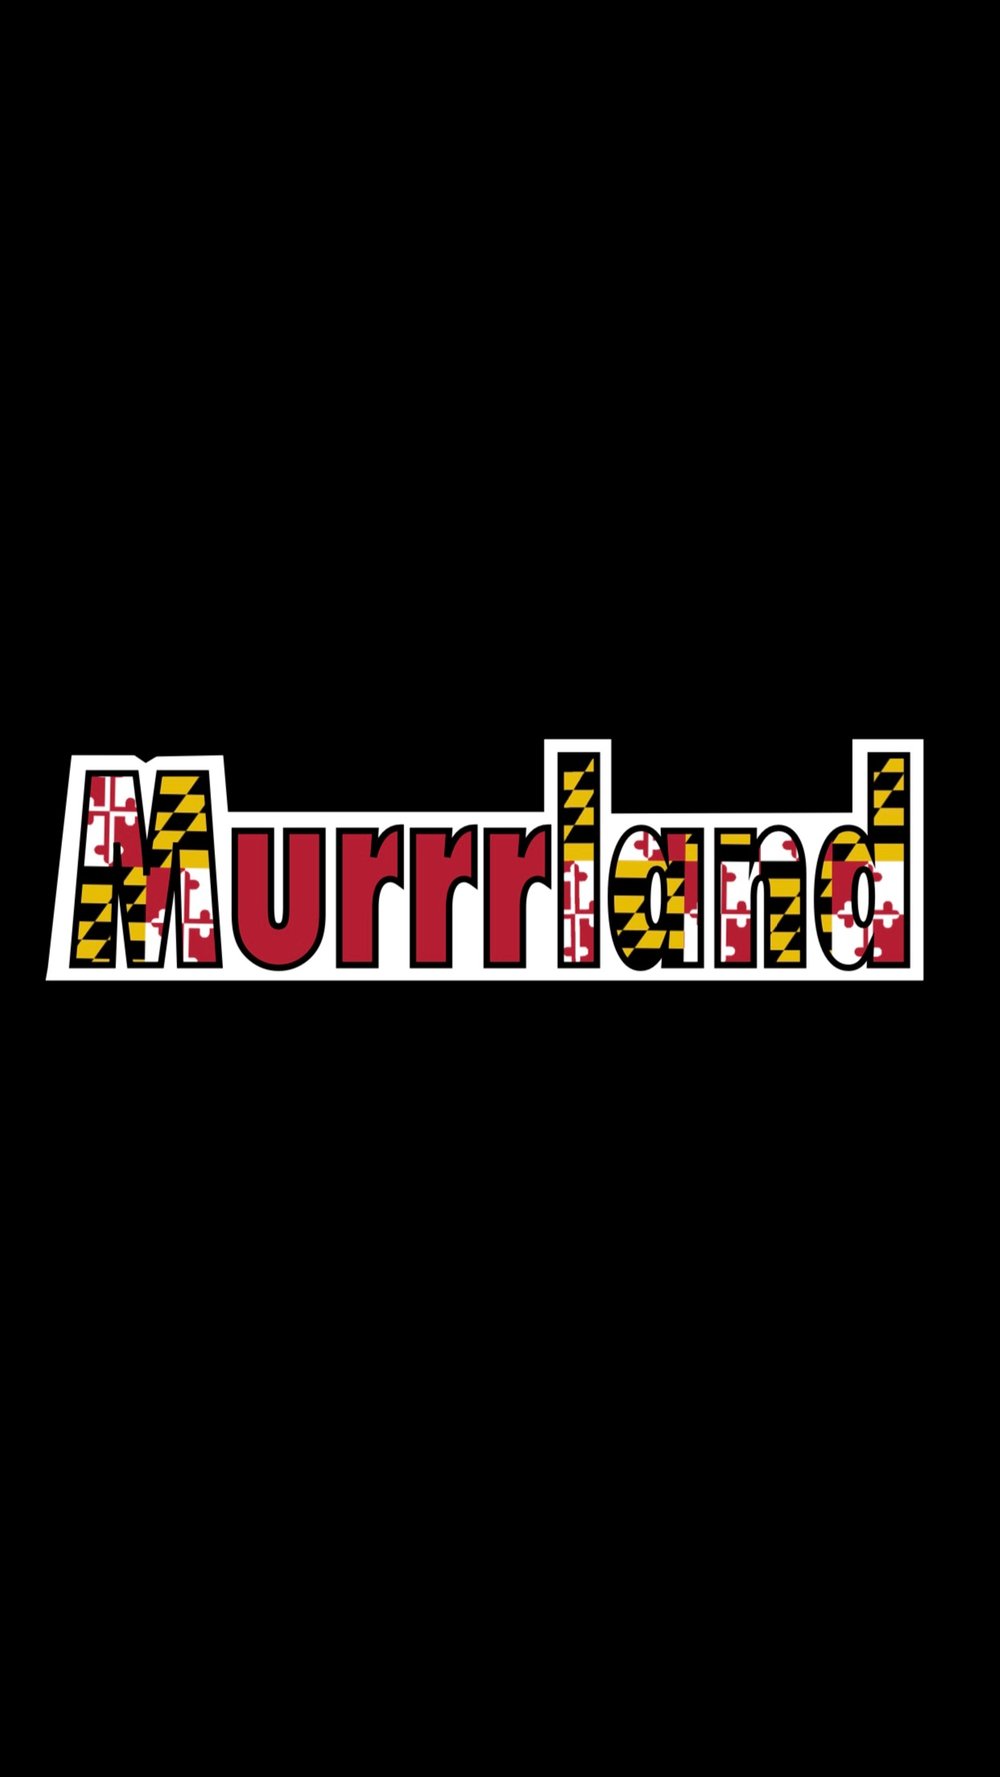 MURRRLAND New